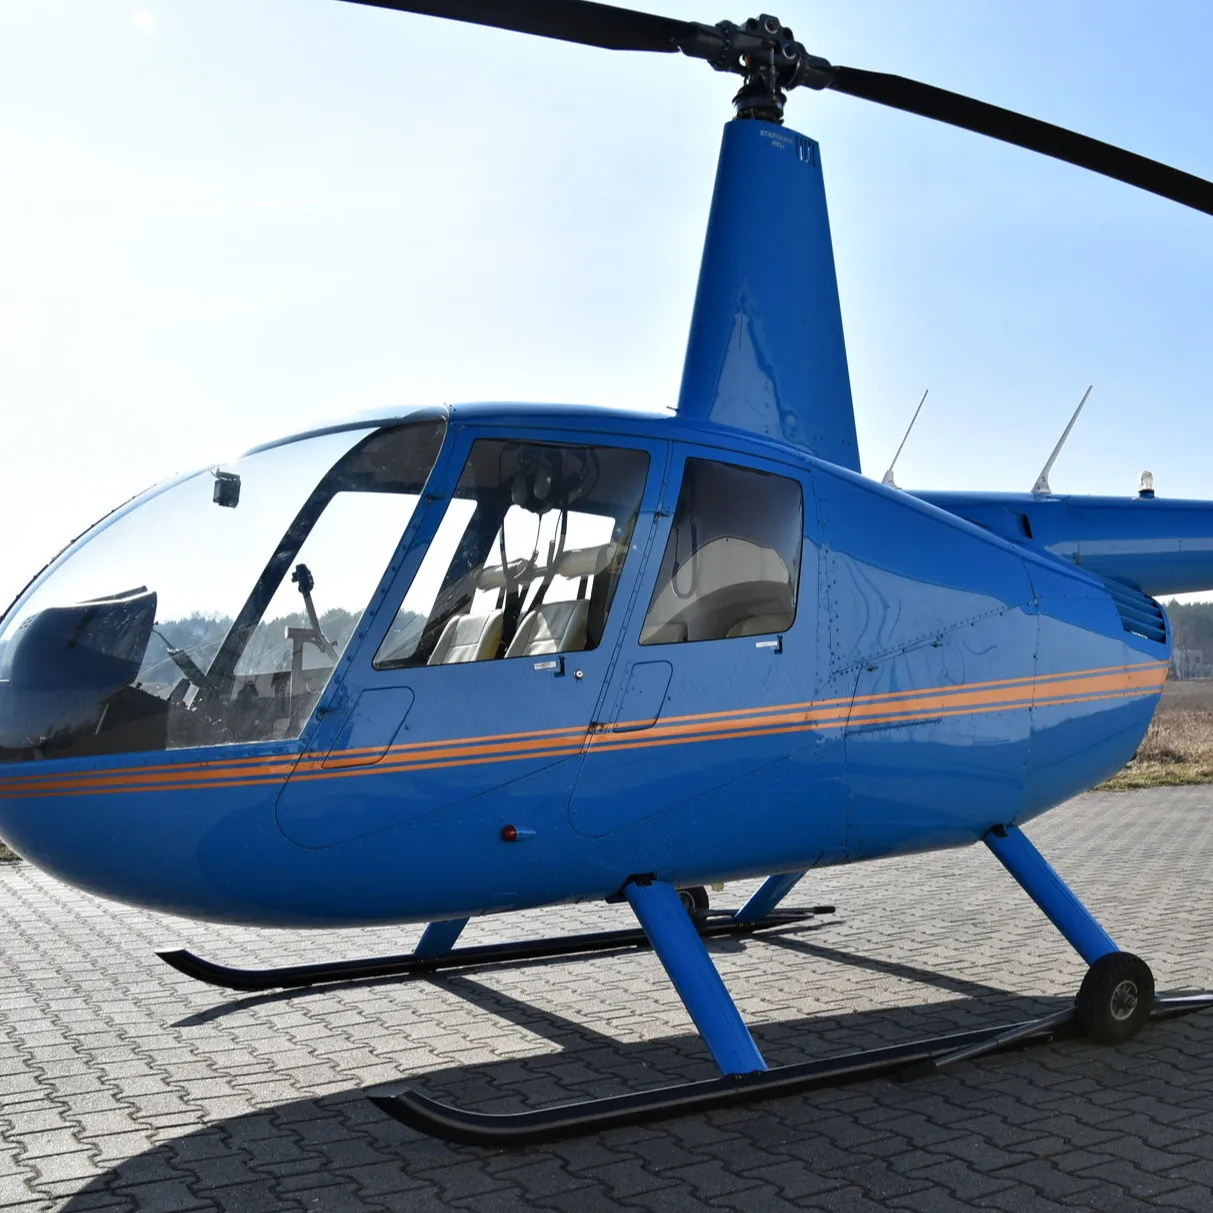 Купить б/у и новые поршневые вертолеты для продажи онлайн